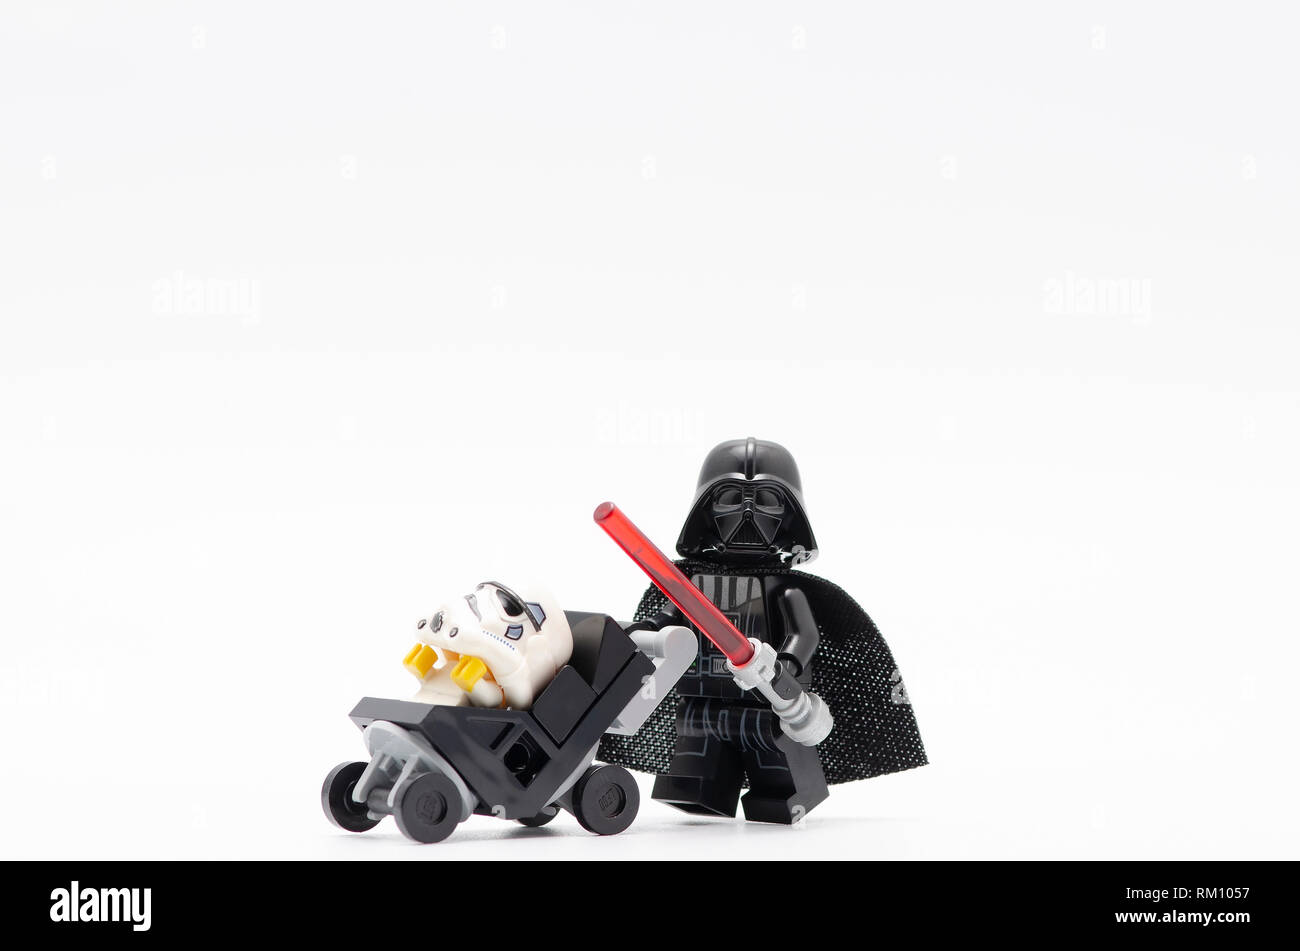 Darth Vader schieben Kinderwagen mit Baby trooper. Lego Minifiguren sind  von der Lego hergestellt Stockfotografie - Alamy